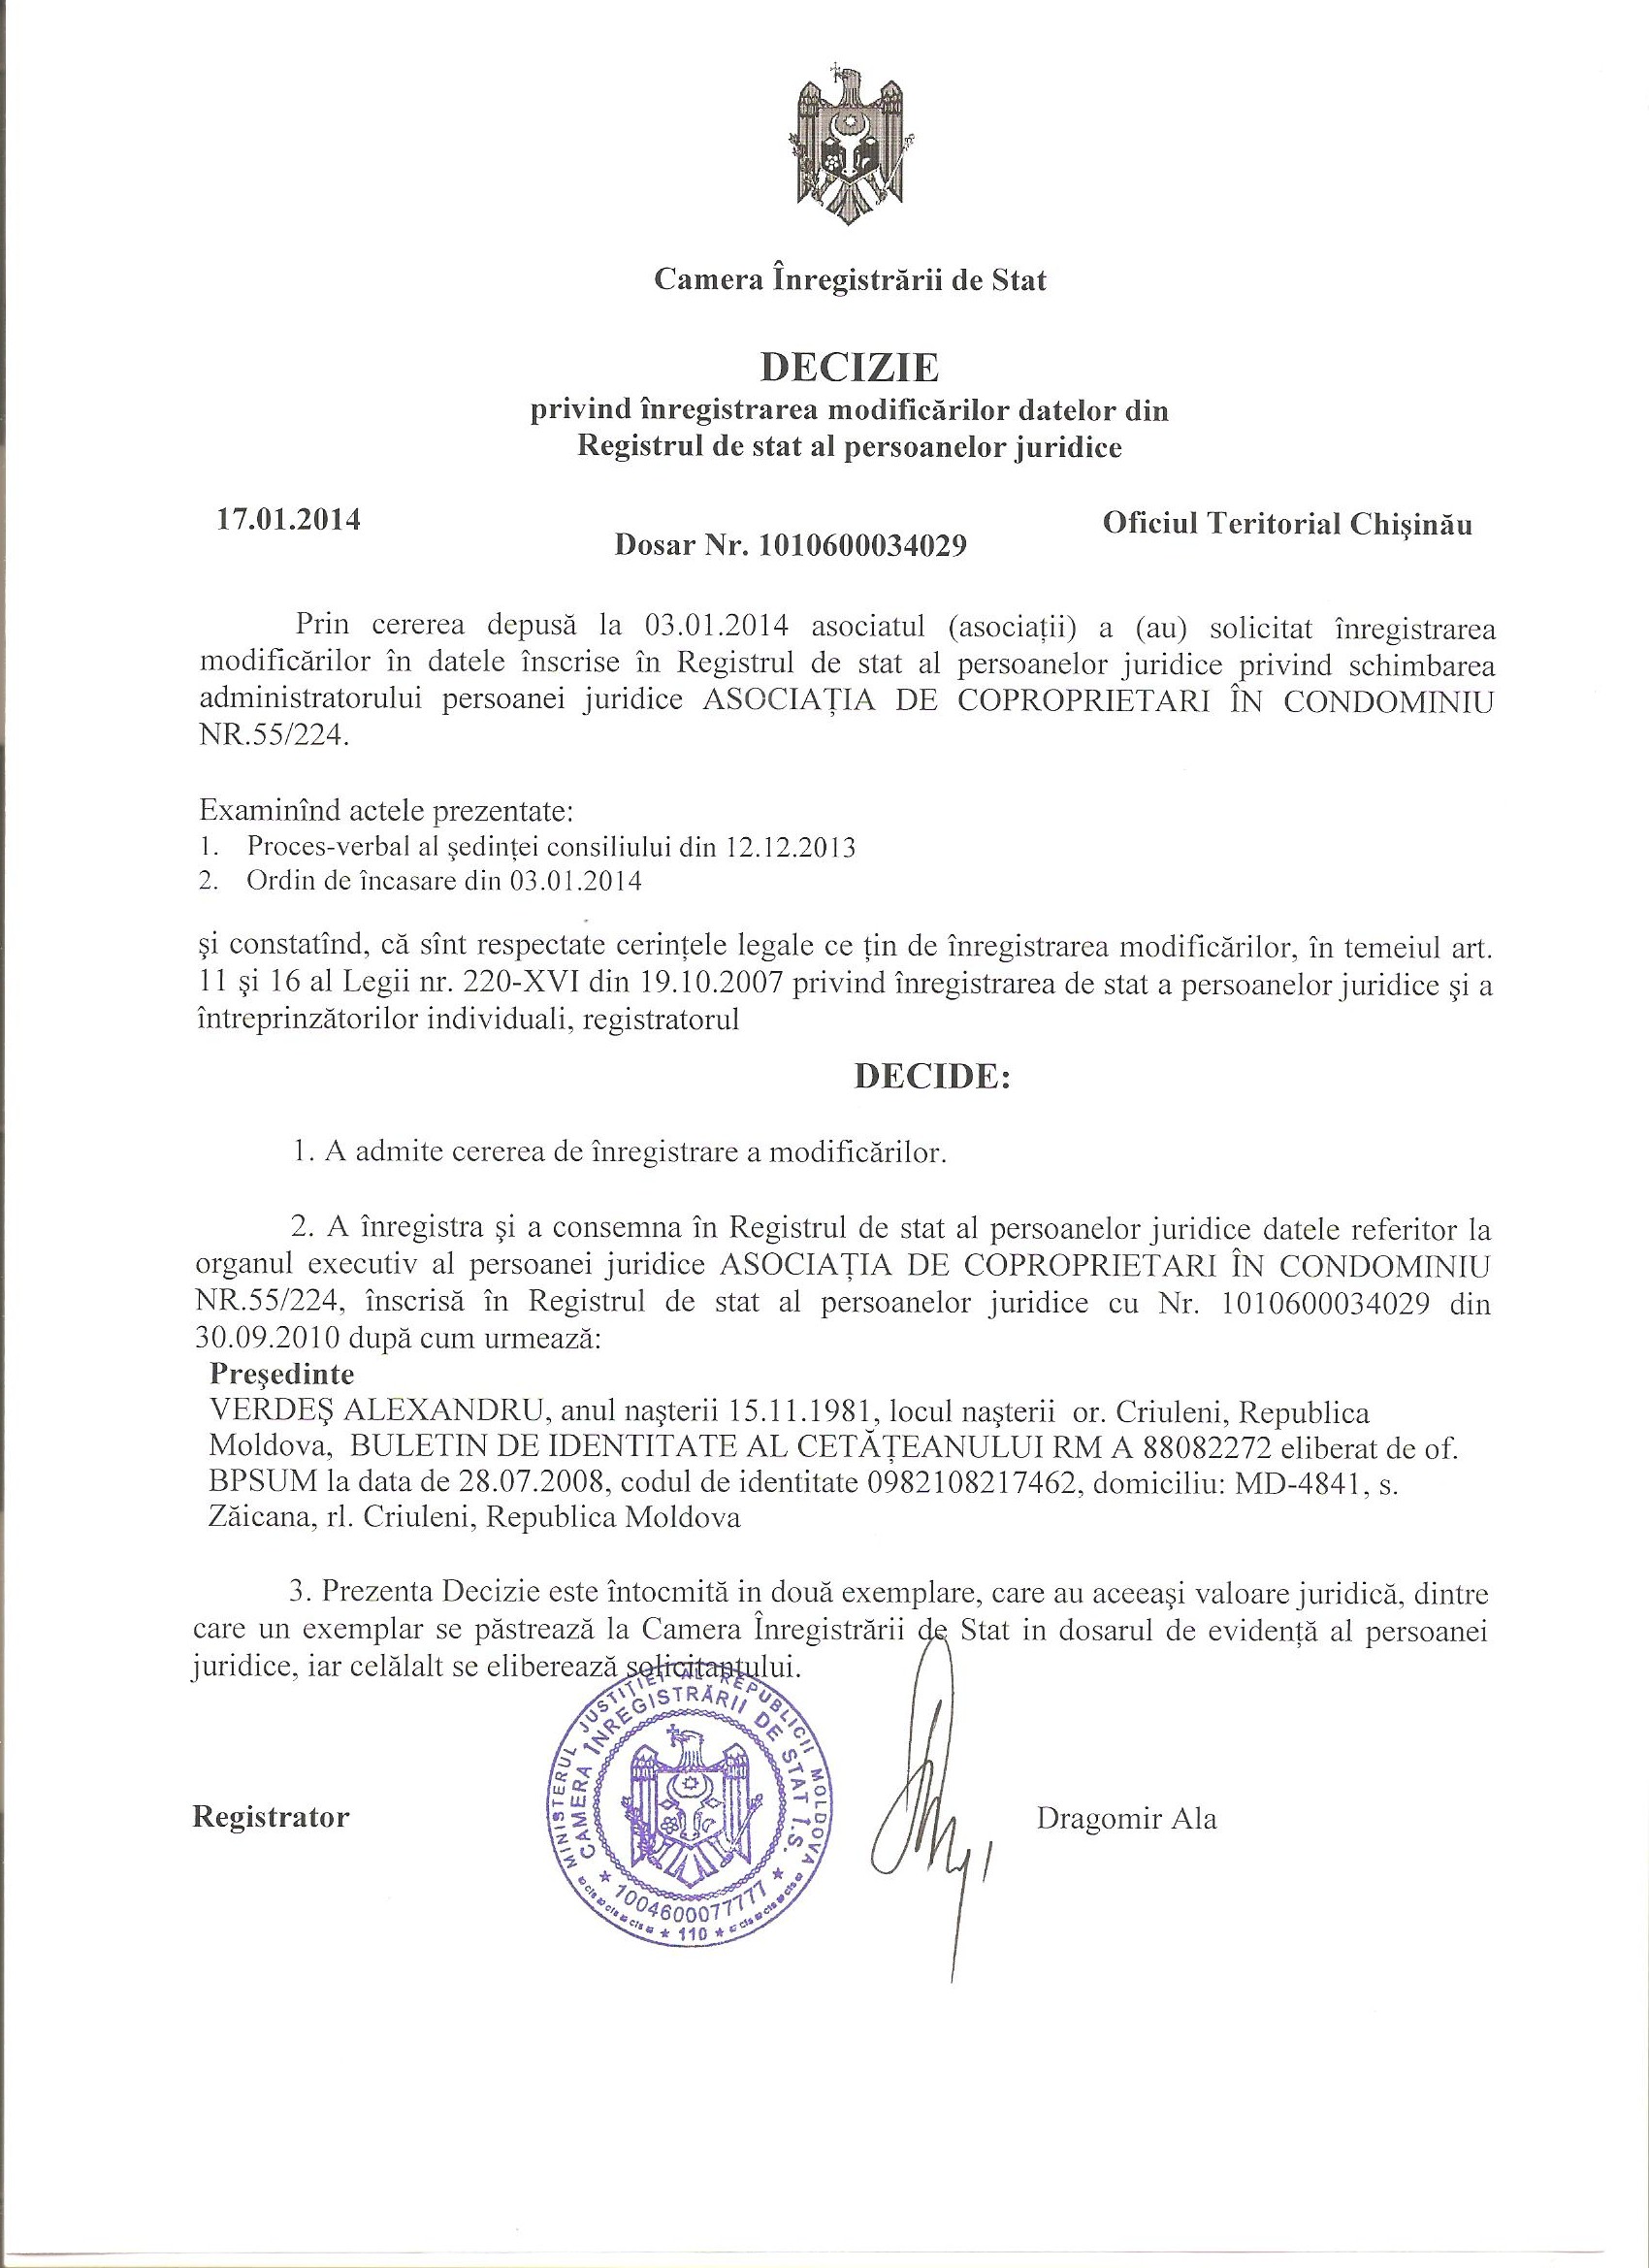 Decizia privind modificarile efectuate in registru registrului de stat cu privire la numirea Verdes Alexandru in calitate de administrator al acc 55/224